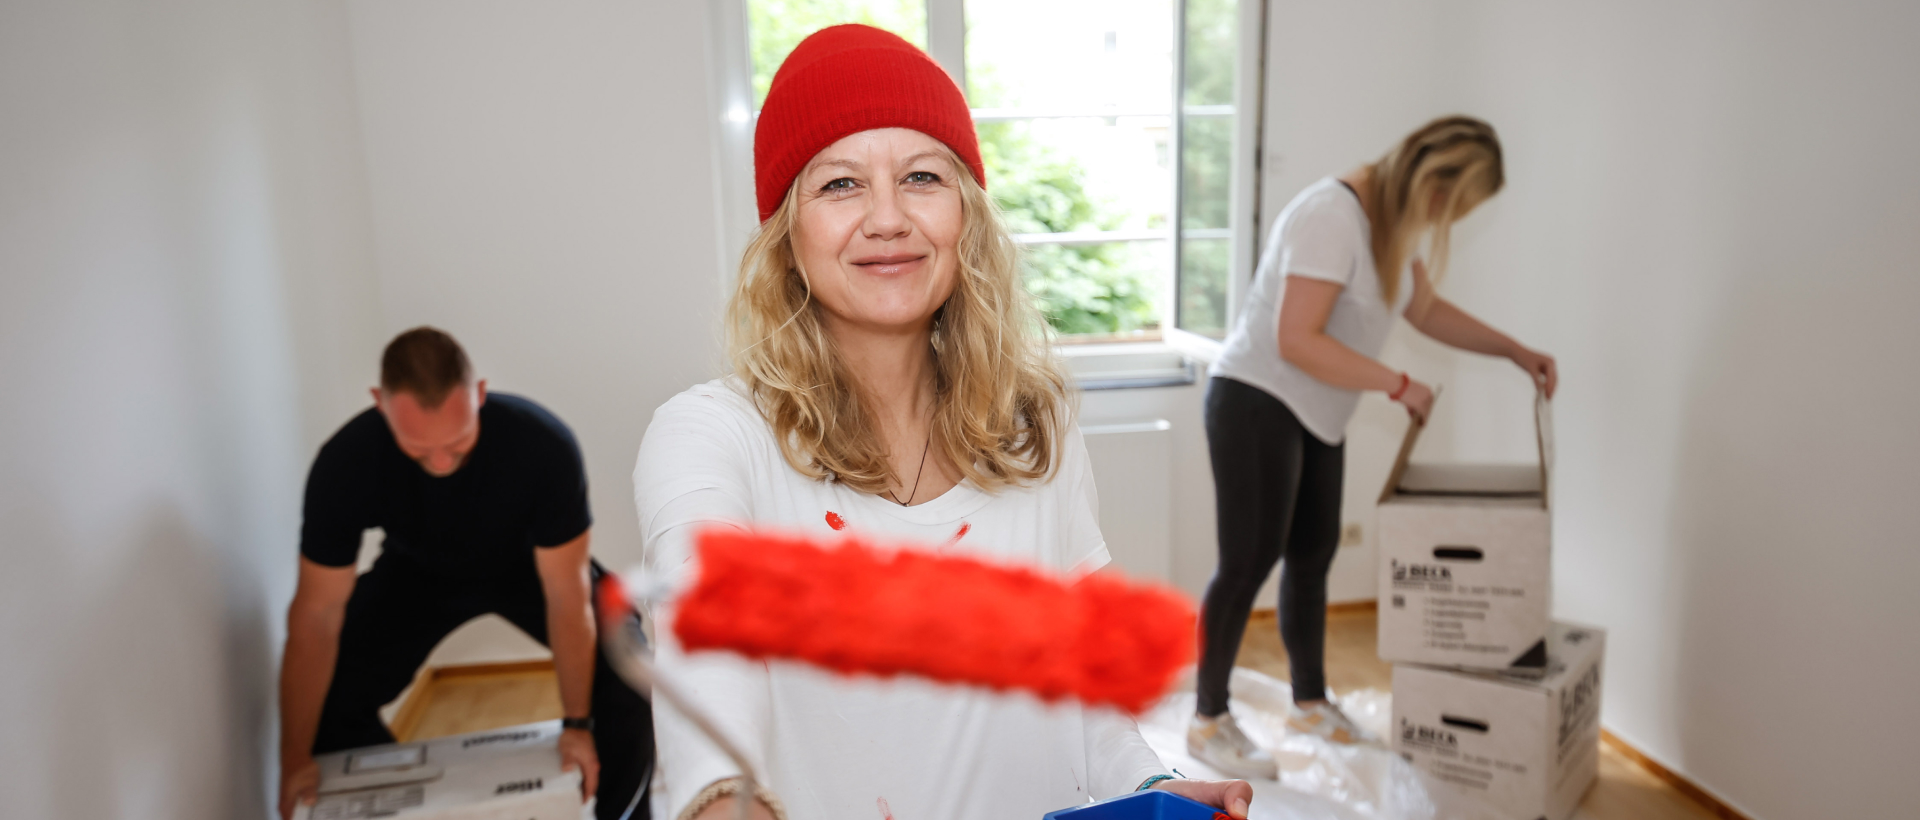 Lächelnde Frau mit roter Mütze hält eine Malerolle mit roter Farbe in die Kamera.